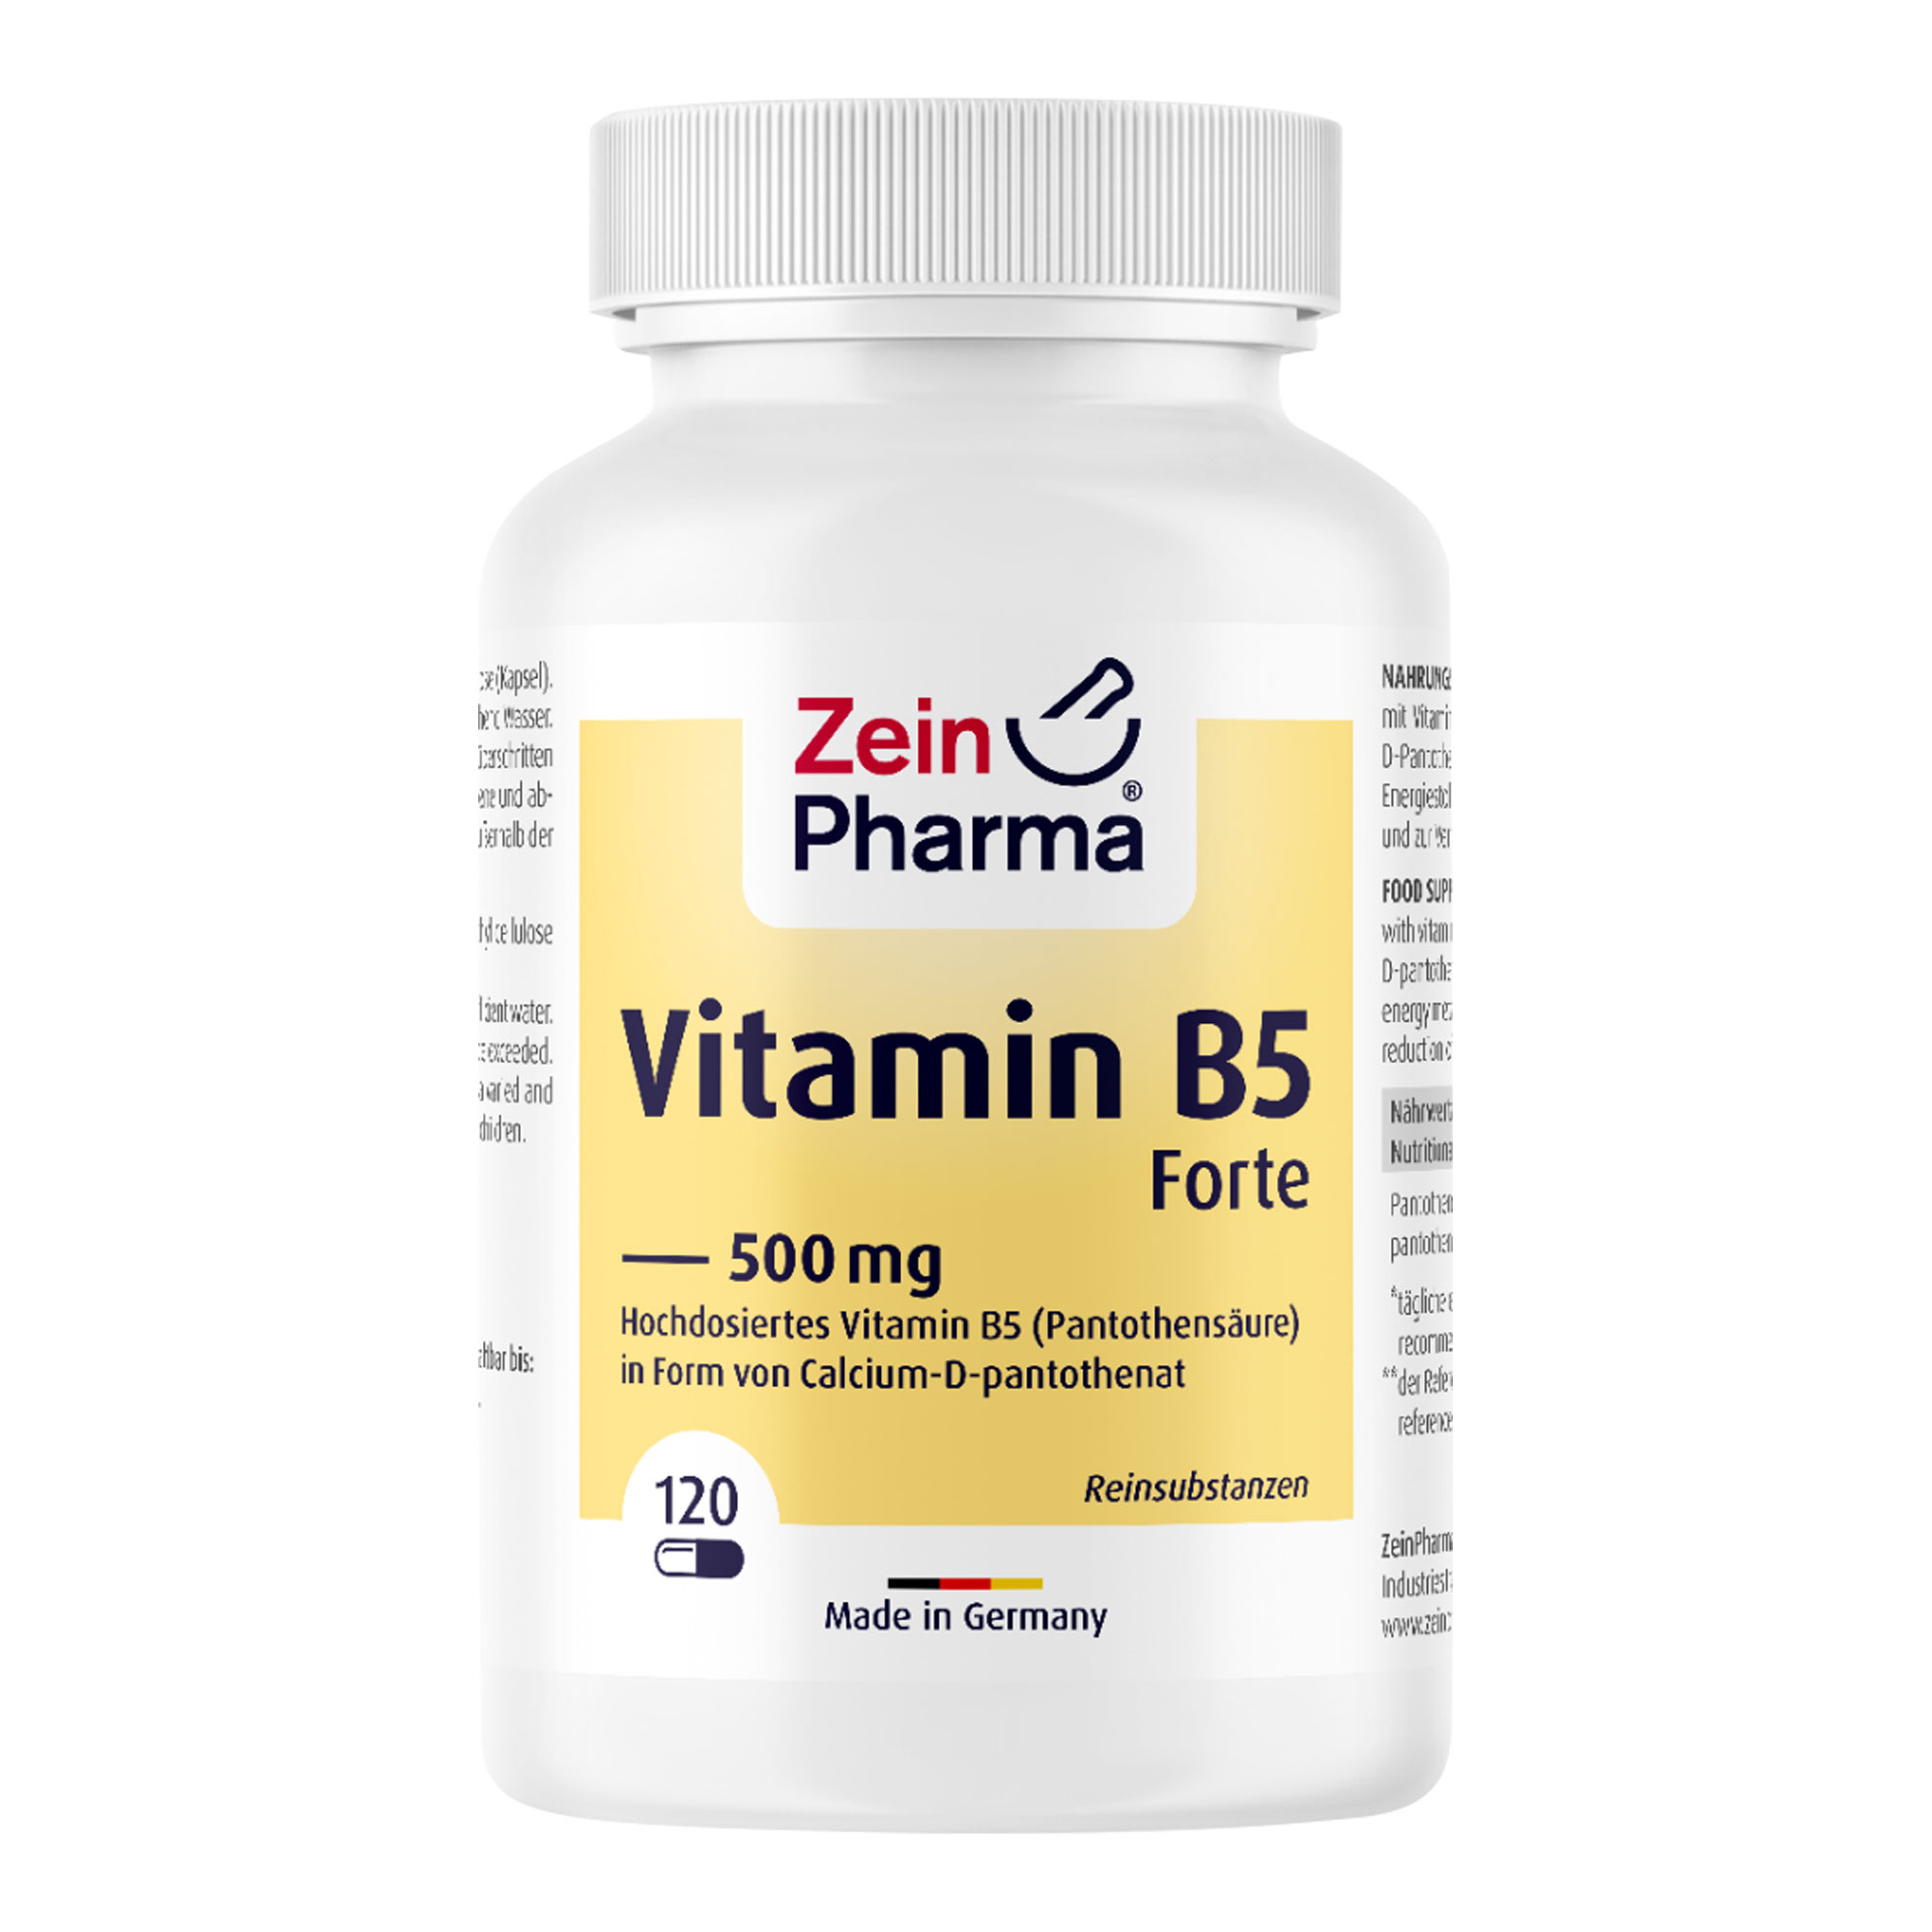 Nahrungsergänzungsmittel mit Vitamin B5 (Pantothensäure) in Form von Calcium-D-Pantothenat.